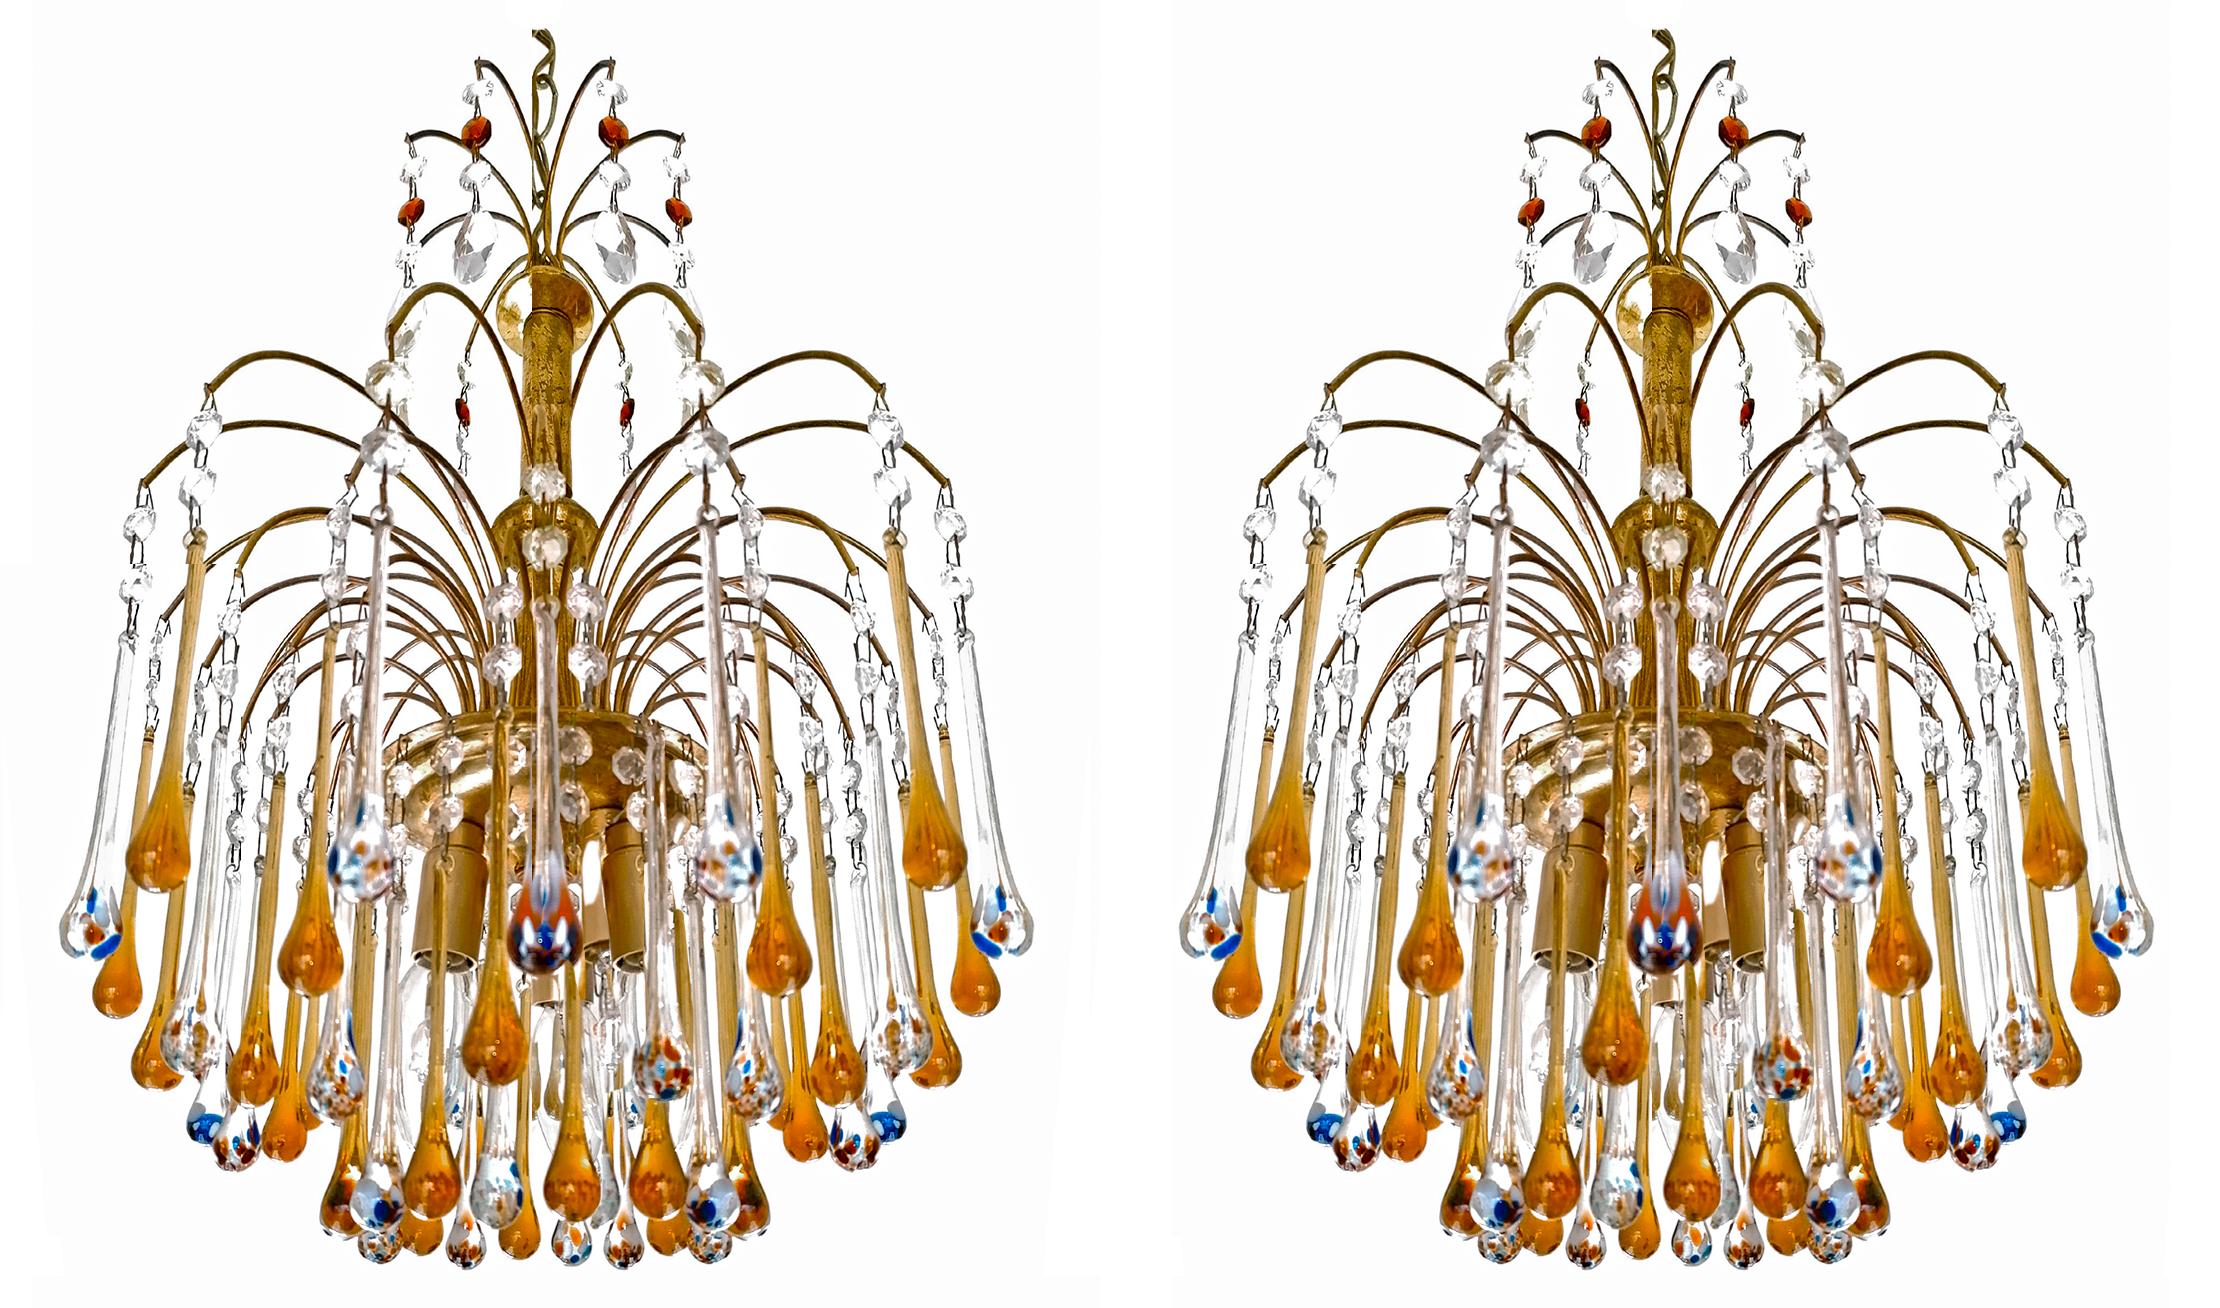 Jolie paire de lustres italiens en forme de cascade dans le style de Venini. En laiton doré et ambré et en cristal de Murano soufflé à la main polychrome, les verres en forme de goutte d'eau produisent un superbe effet lumineux !
Patine